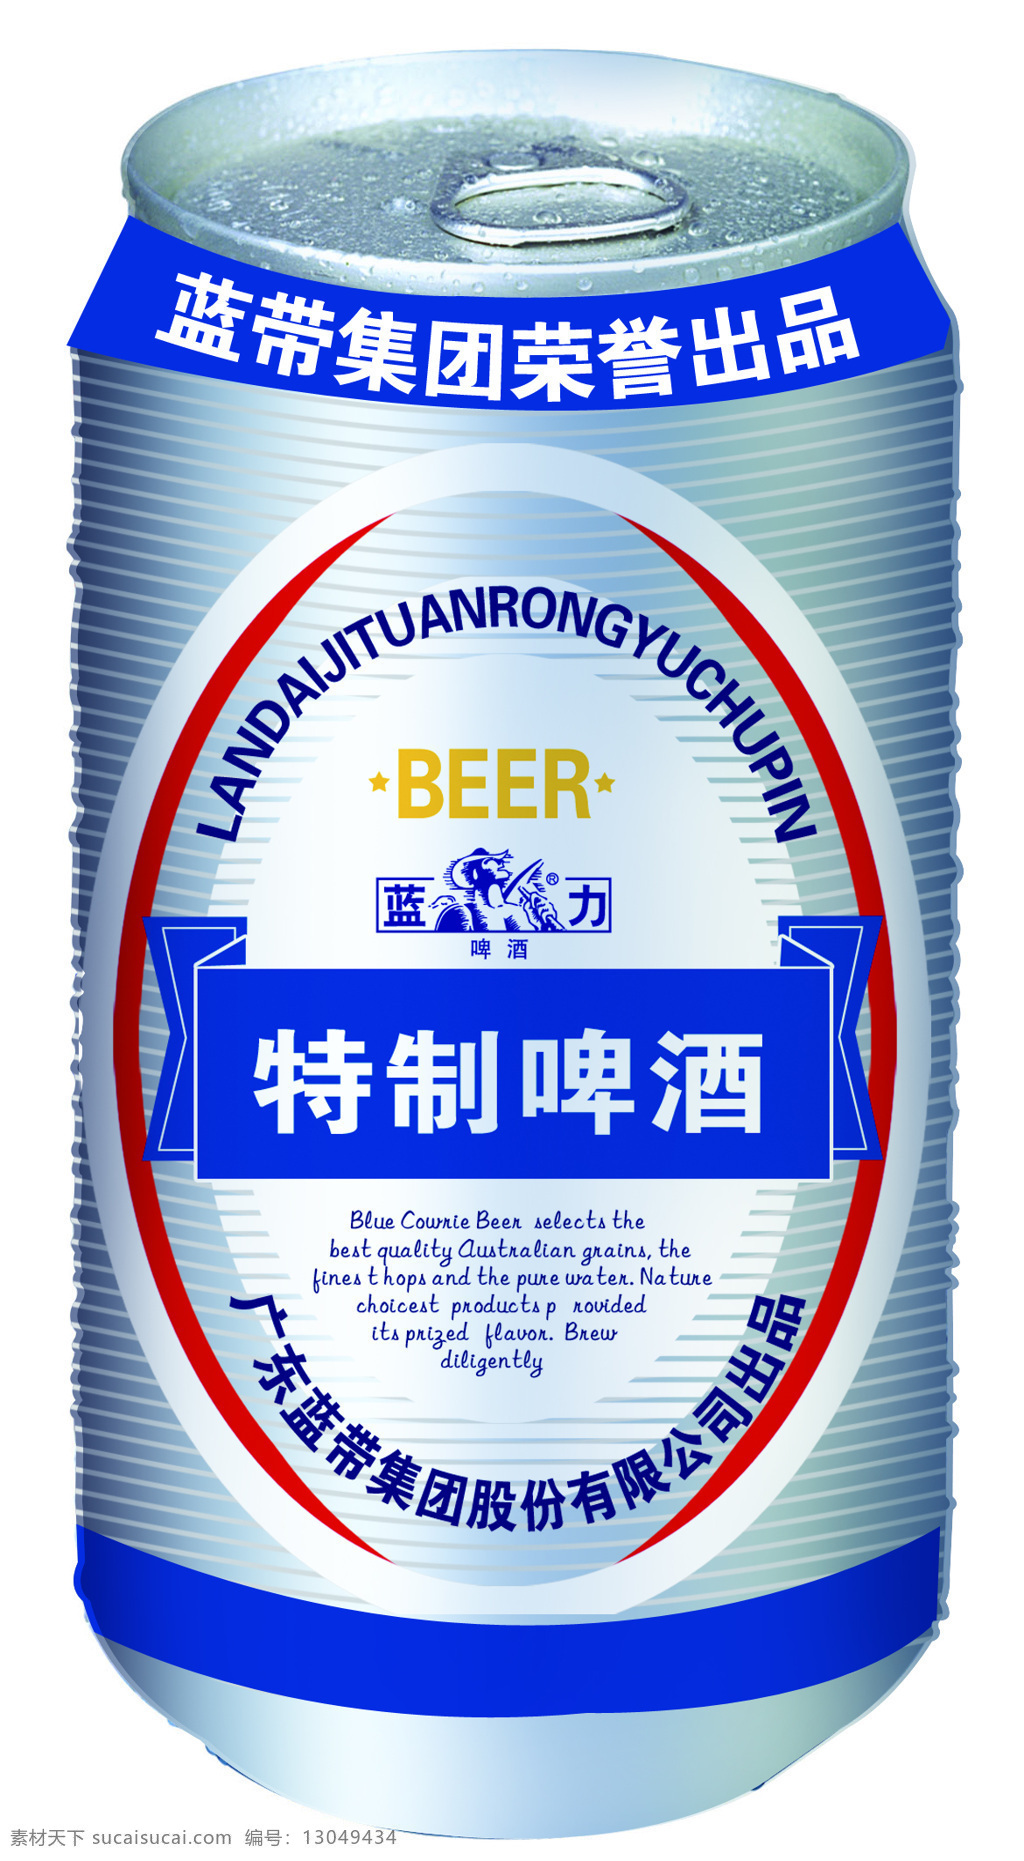 特制 餐饮美食 啤酒 摄影图库 饮料酒水 特制啤酒 蓝带啤酒 蓝贝 易拉罐啤酒